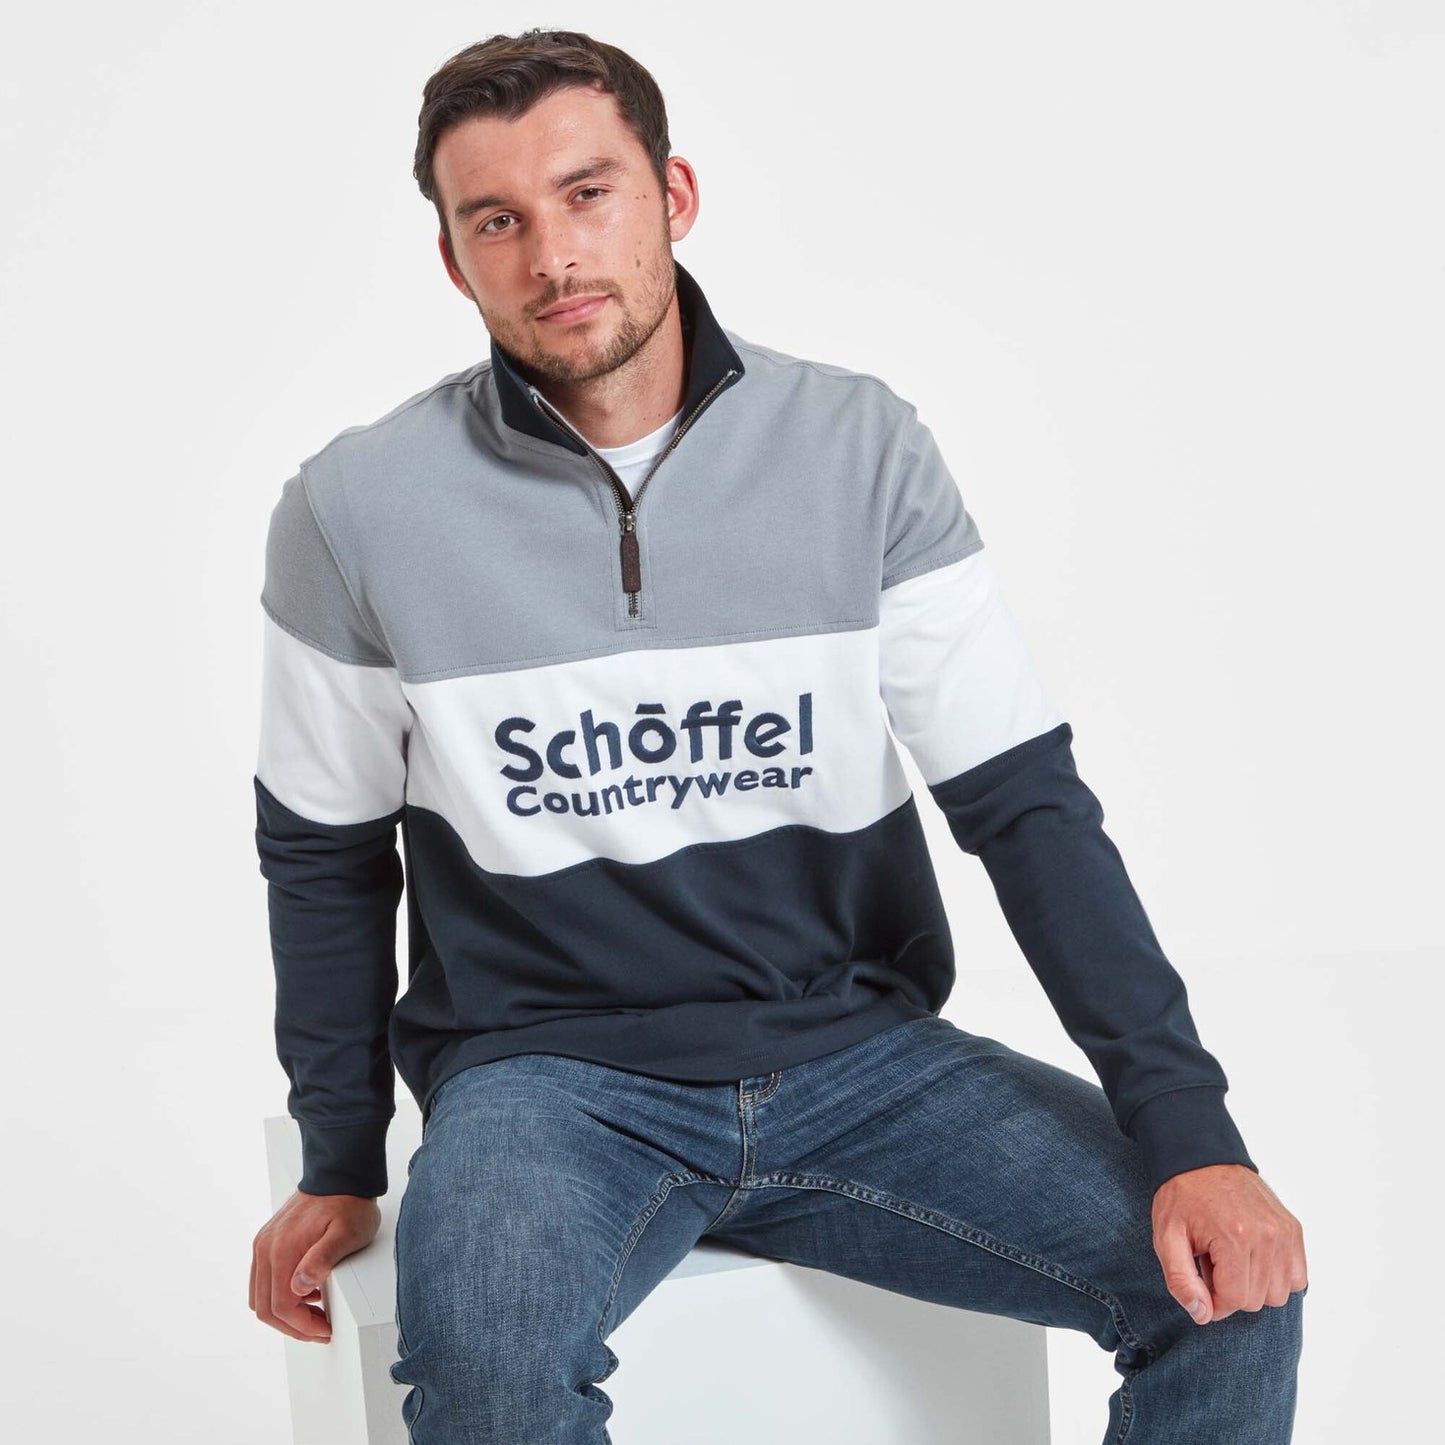 Schoffel Sweatshirt, the Exeter Heritage 1/4 Zip